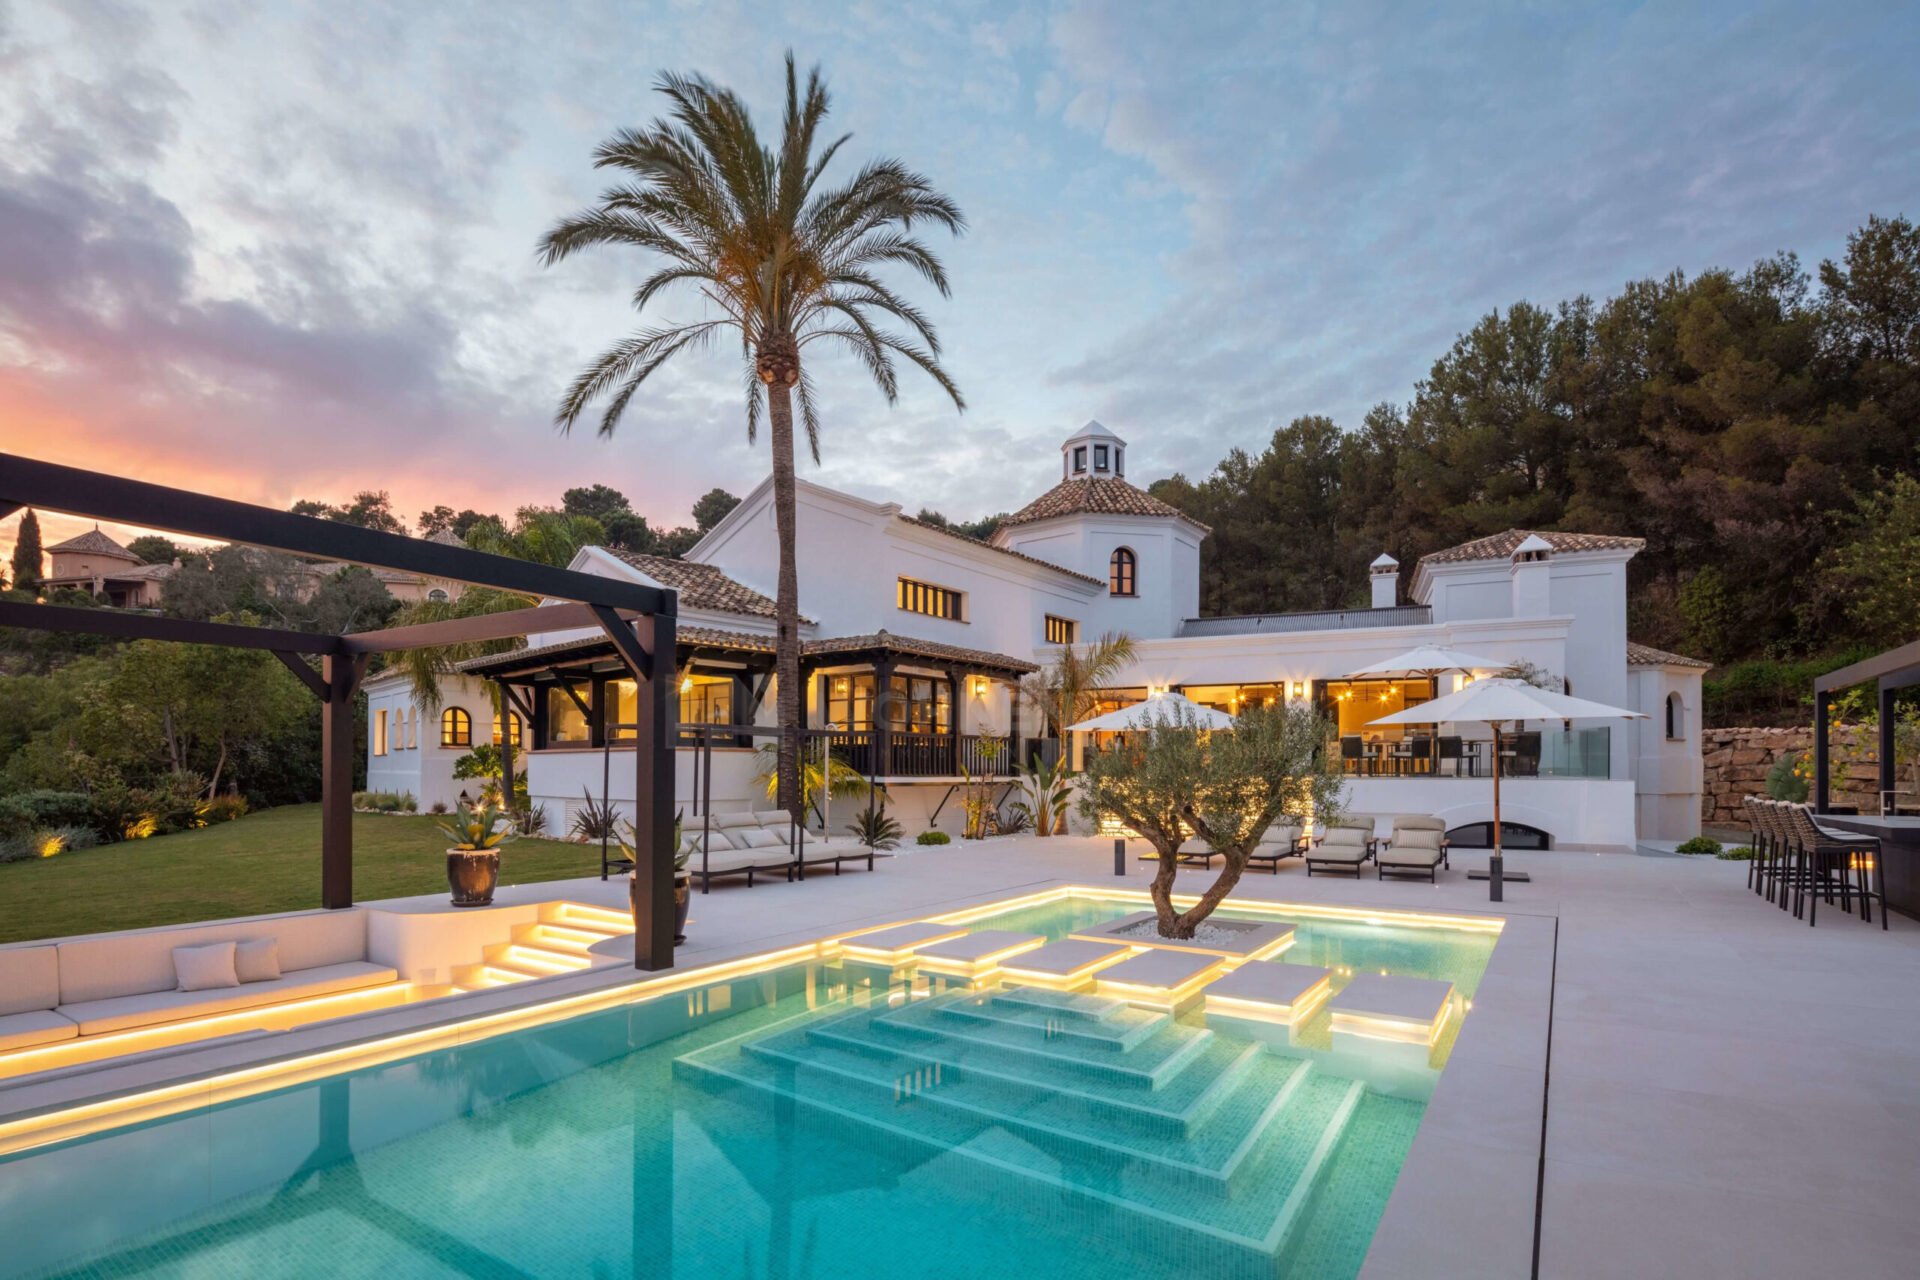 Villa de estilo rústico andaluz con vistas al golf, al mar ya la montaña en La Zagaleta